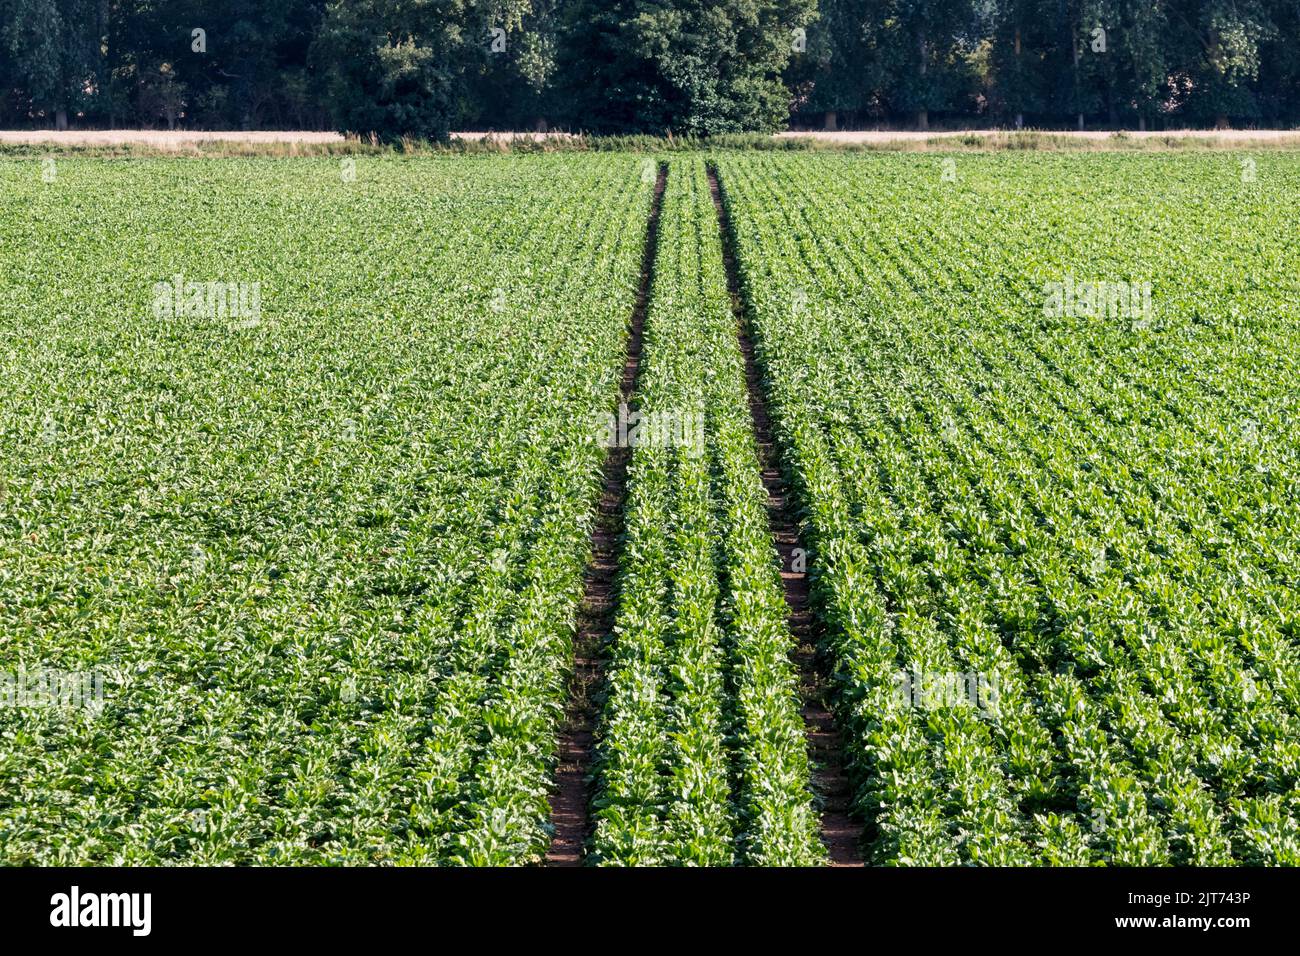 A field of sugar beet, Beta vulgaris subsp. vulgaris, growing in Norfolk. Stock Photo